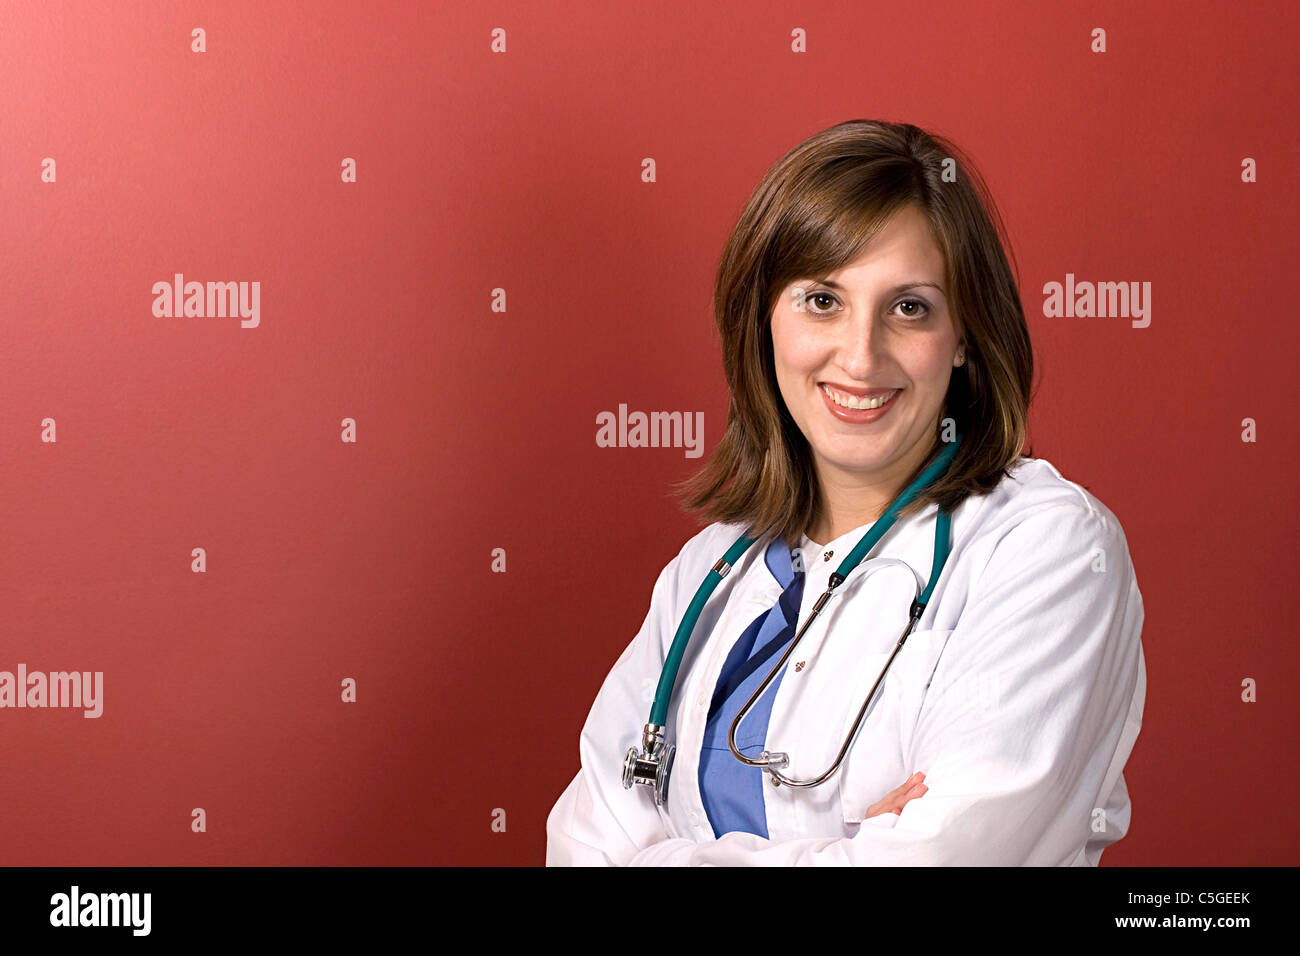 Ein junger Arzt isoliert auf einem roten Hintergrund mit Exemplar. Stockfoto